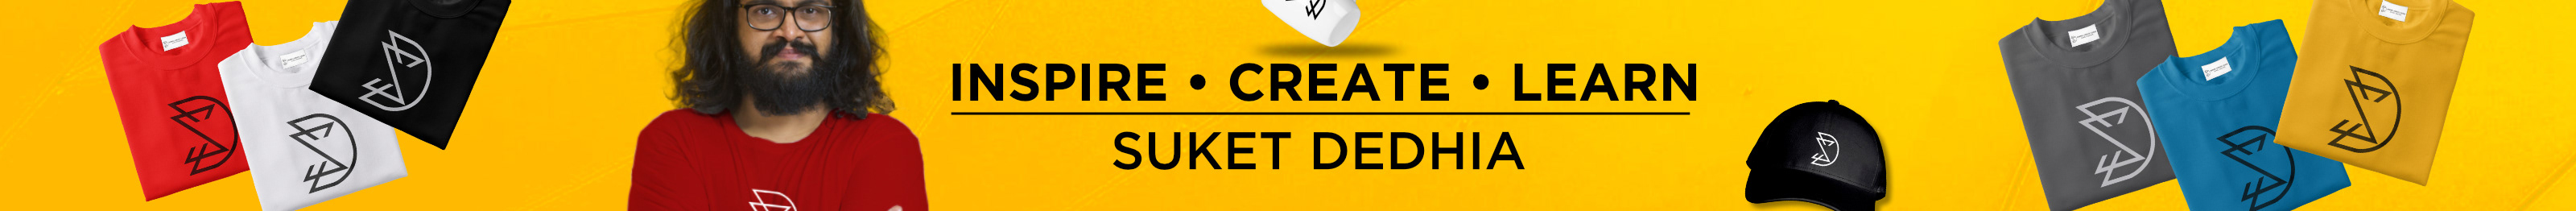 Suket Dedhia's profile banner